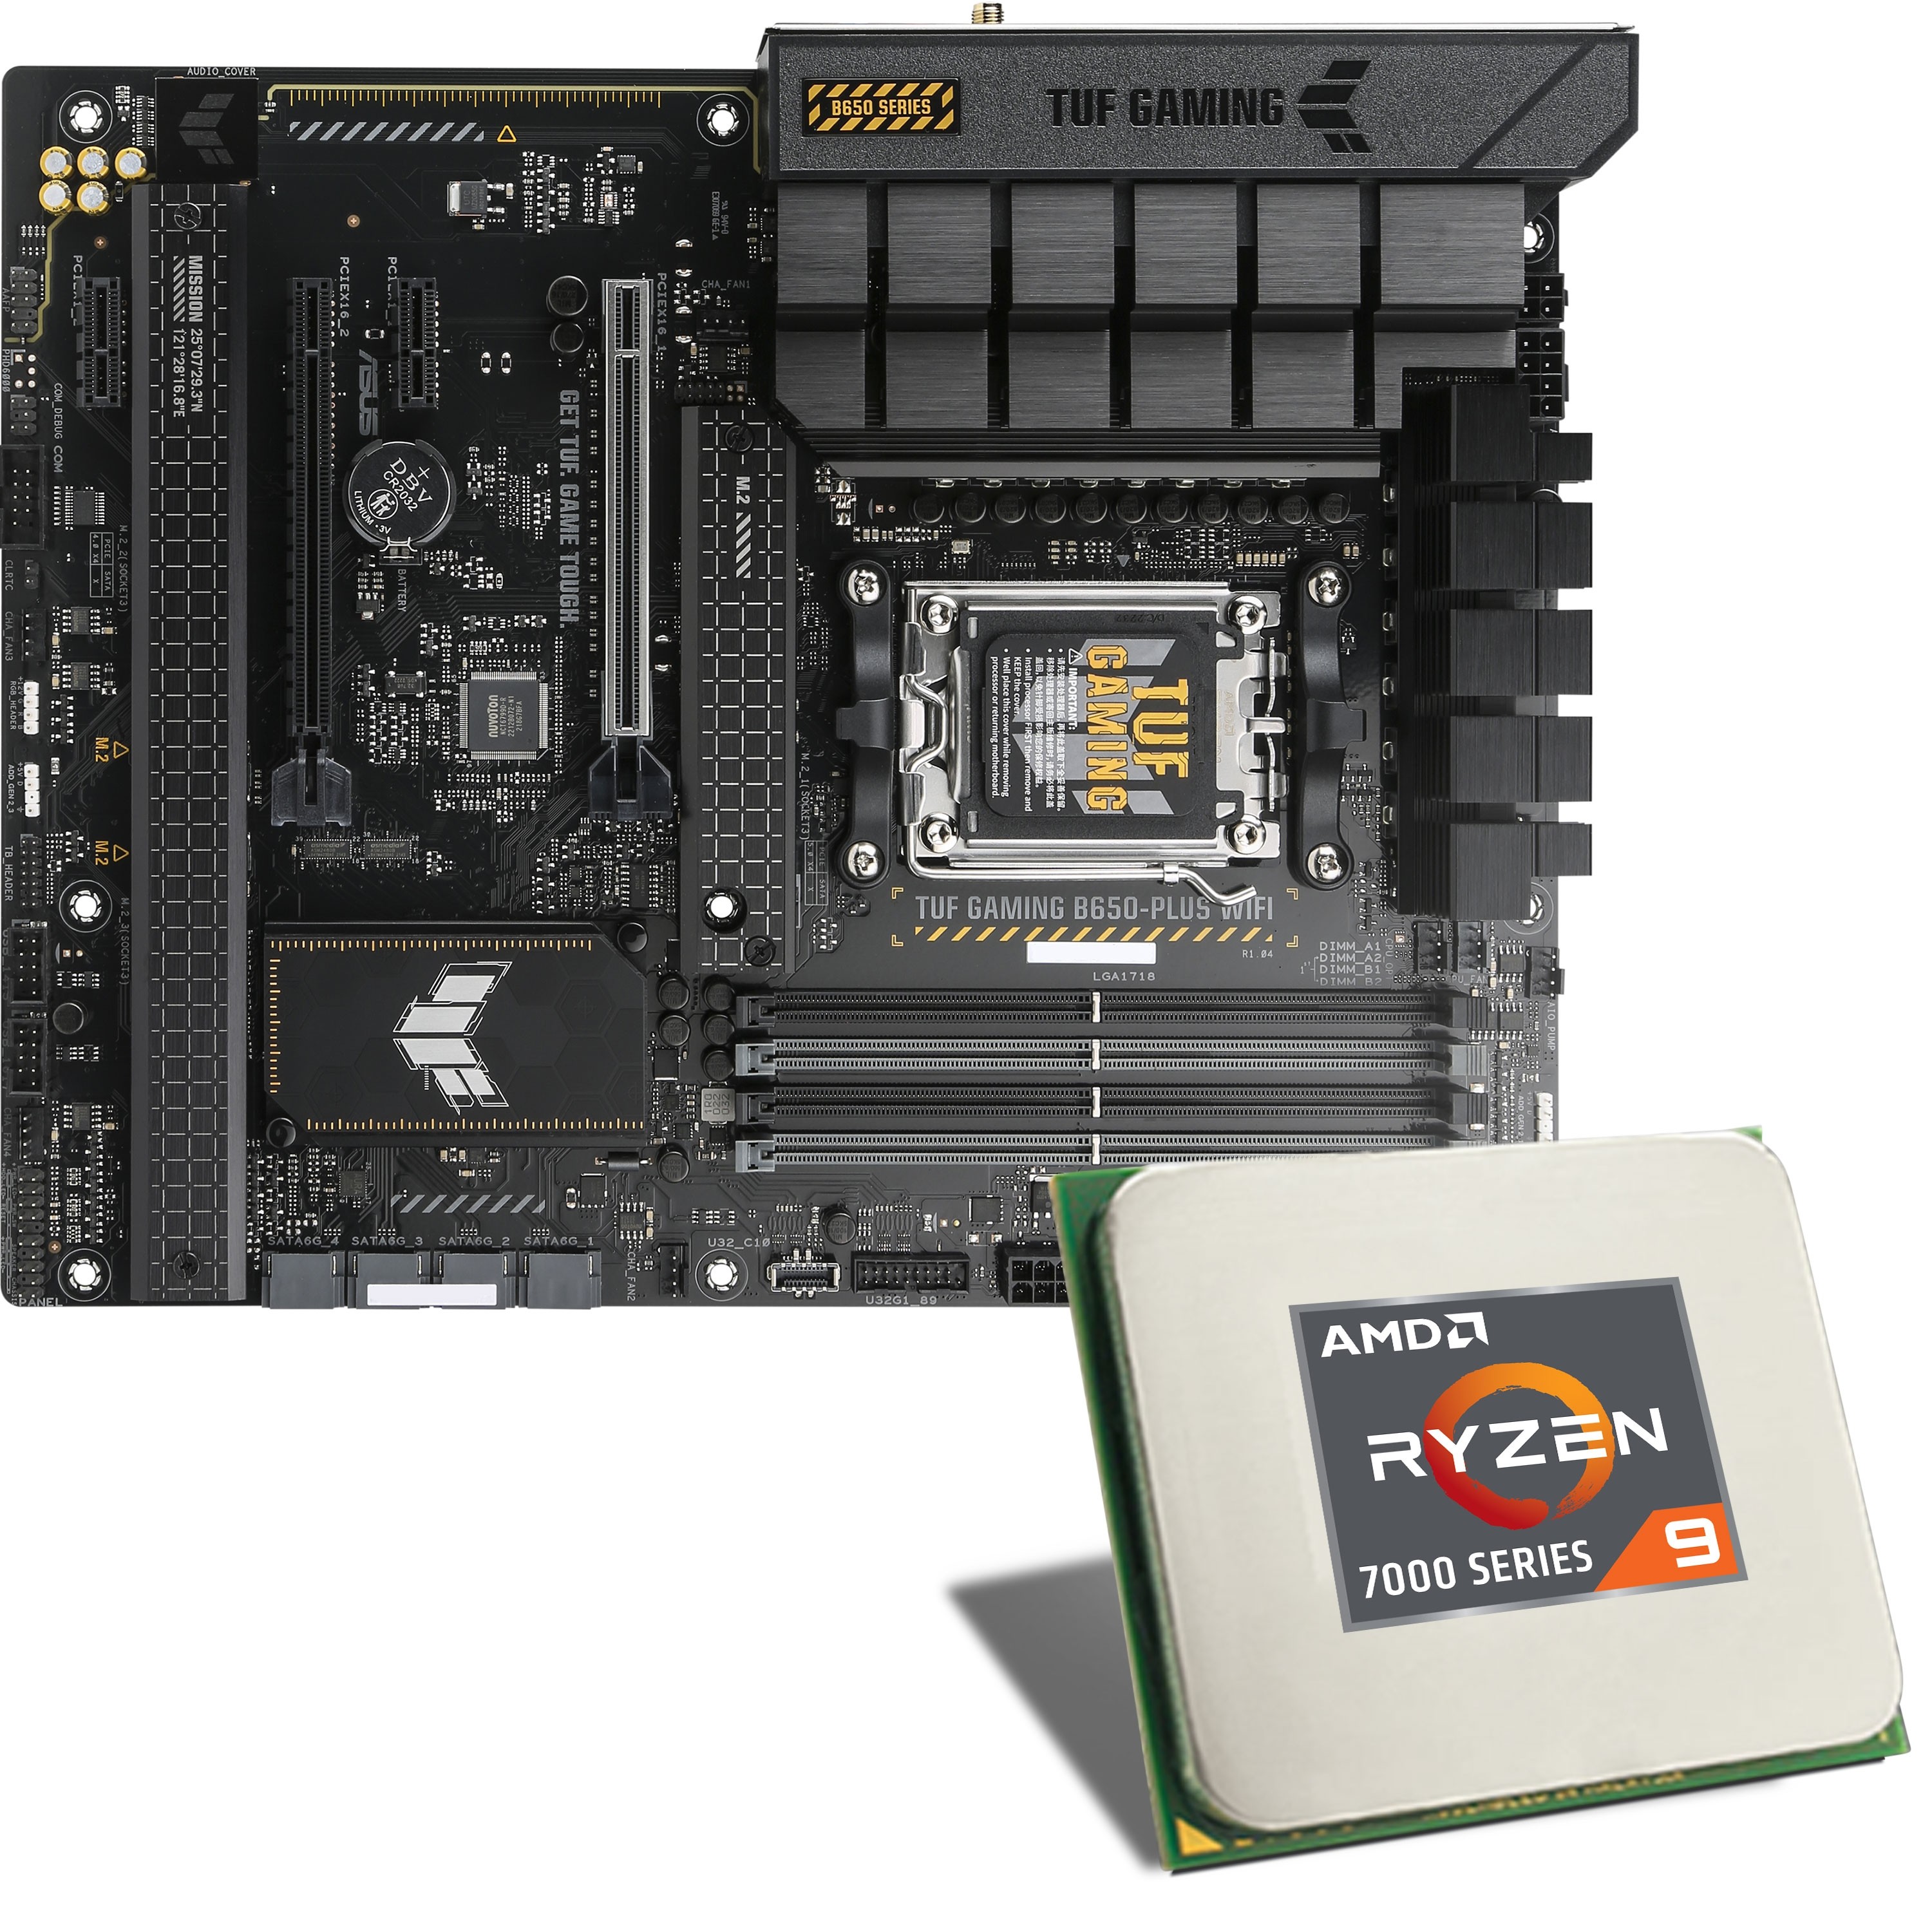 AMD Ryzen™ 9 7950X3D 16-Core, 32-Thread Desktop Processor IN HAND SHIPS  FAST!